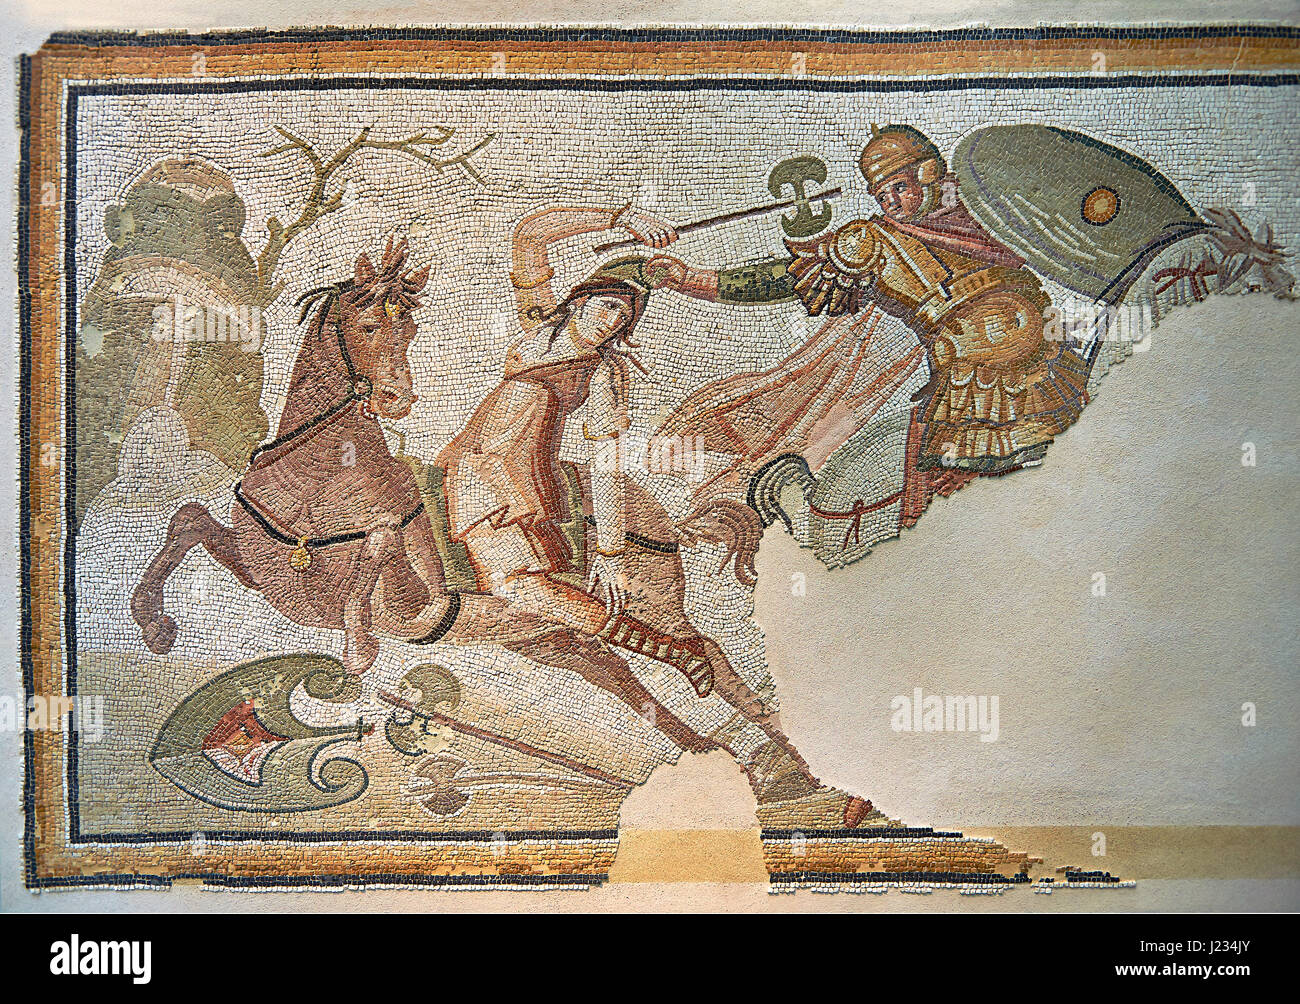 Eine Amazone zu Pferd kämpfen, von Daphne, einem Vorort von Antiochia, Antakya, Türkei, 4. Jahrhundert n. Chr. römische Mosaik. Marmorblöcke und Glaskubus einfügen Stockfoto